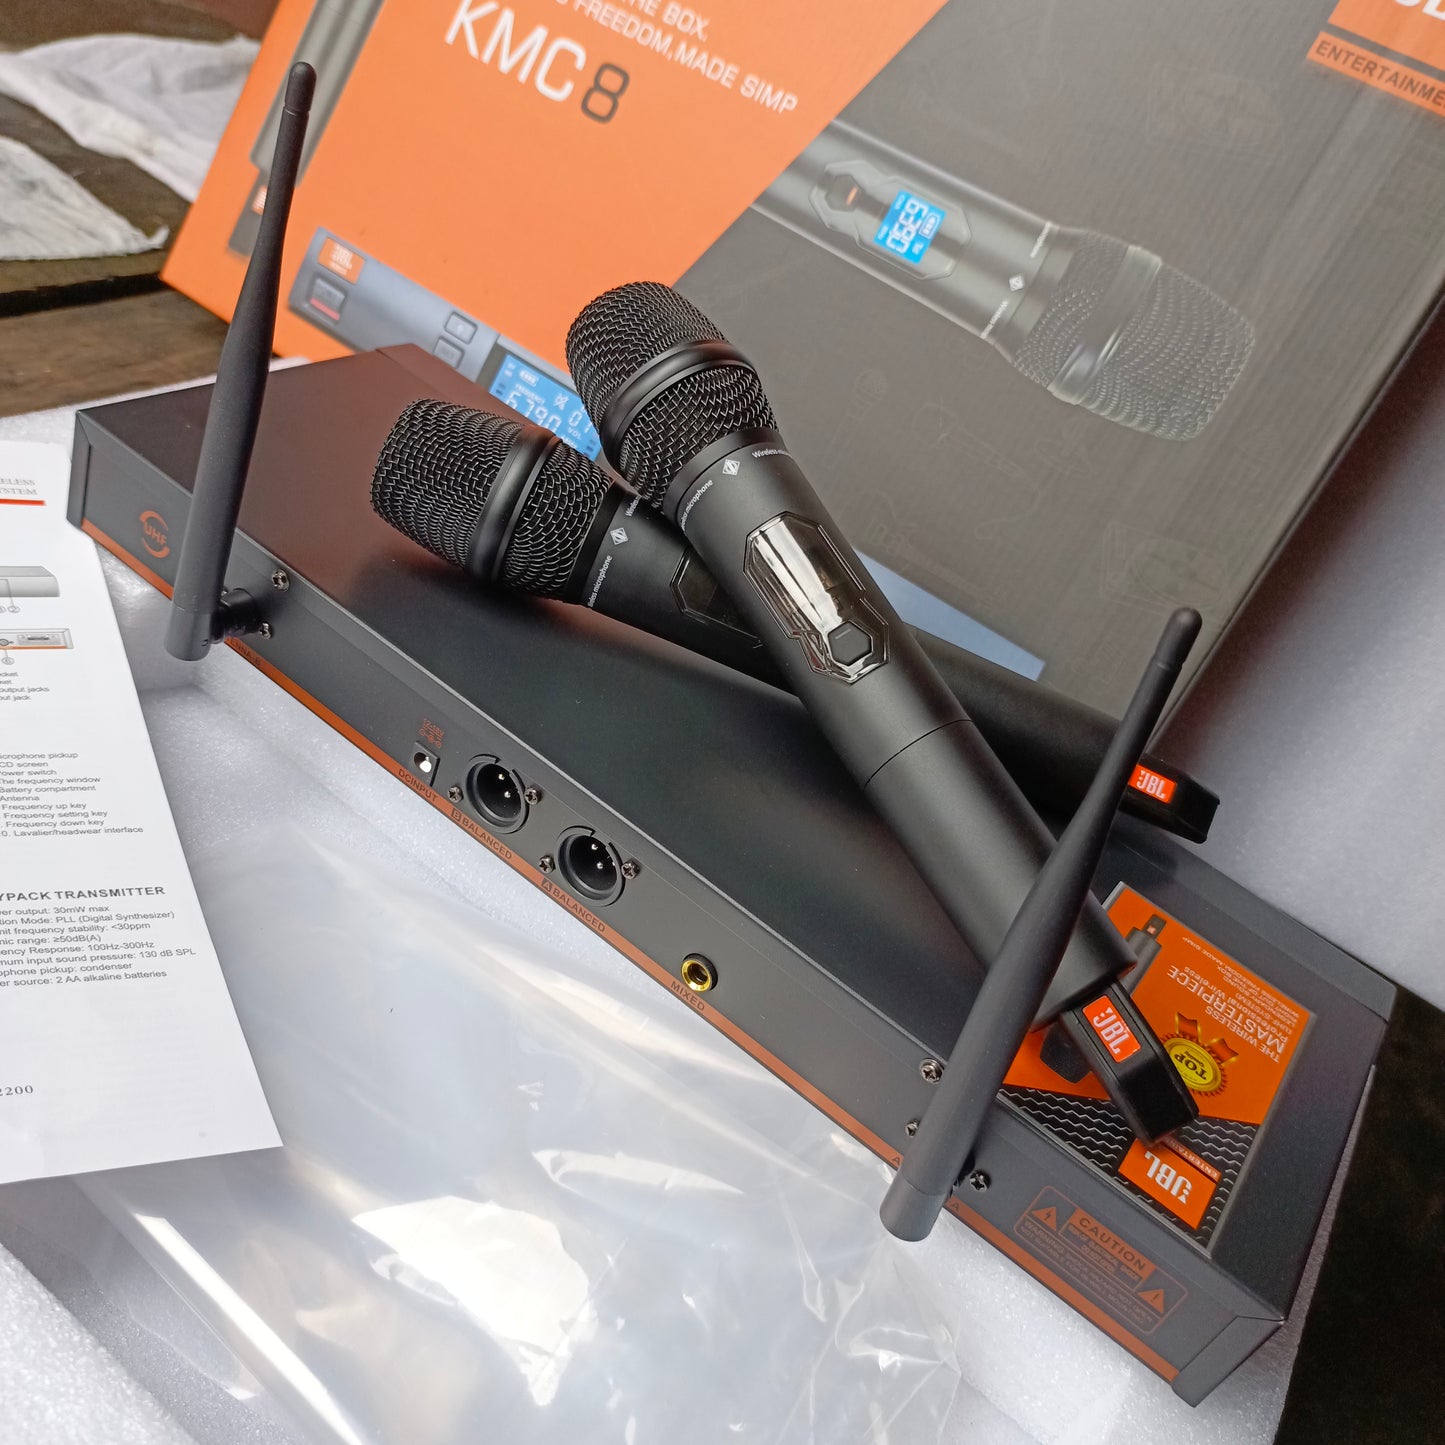 JBL KMC8 Microphone numérique professionnel sans fil multicanal double (2 voies) (portée 300 m) - Tout neuf